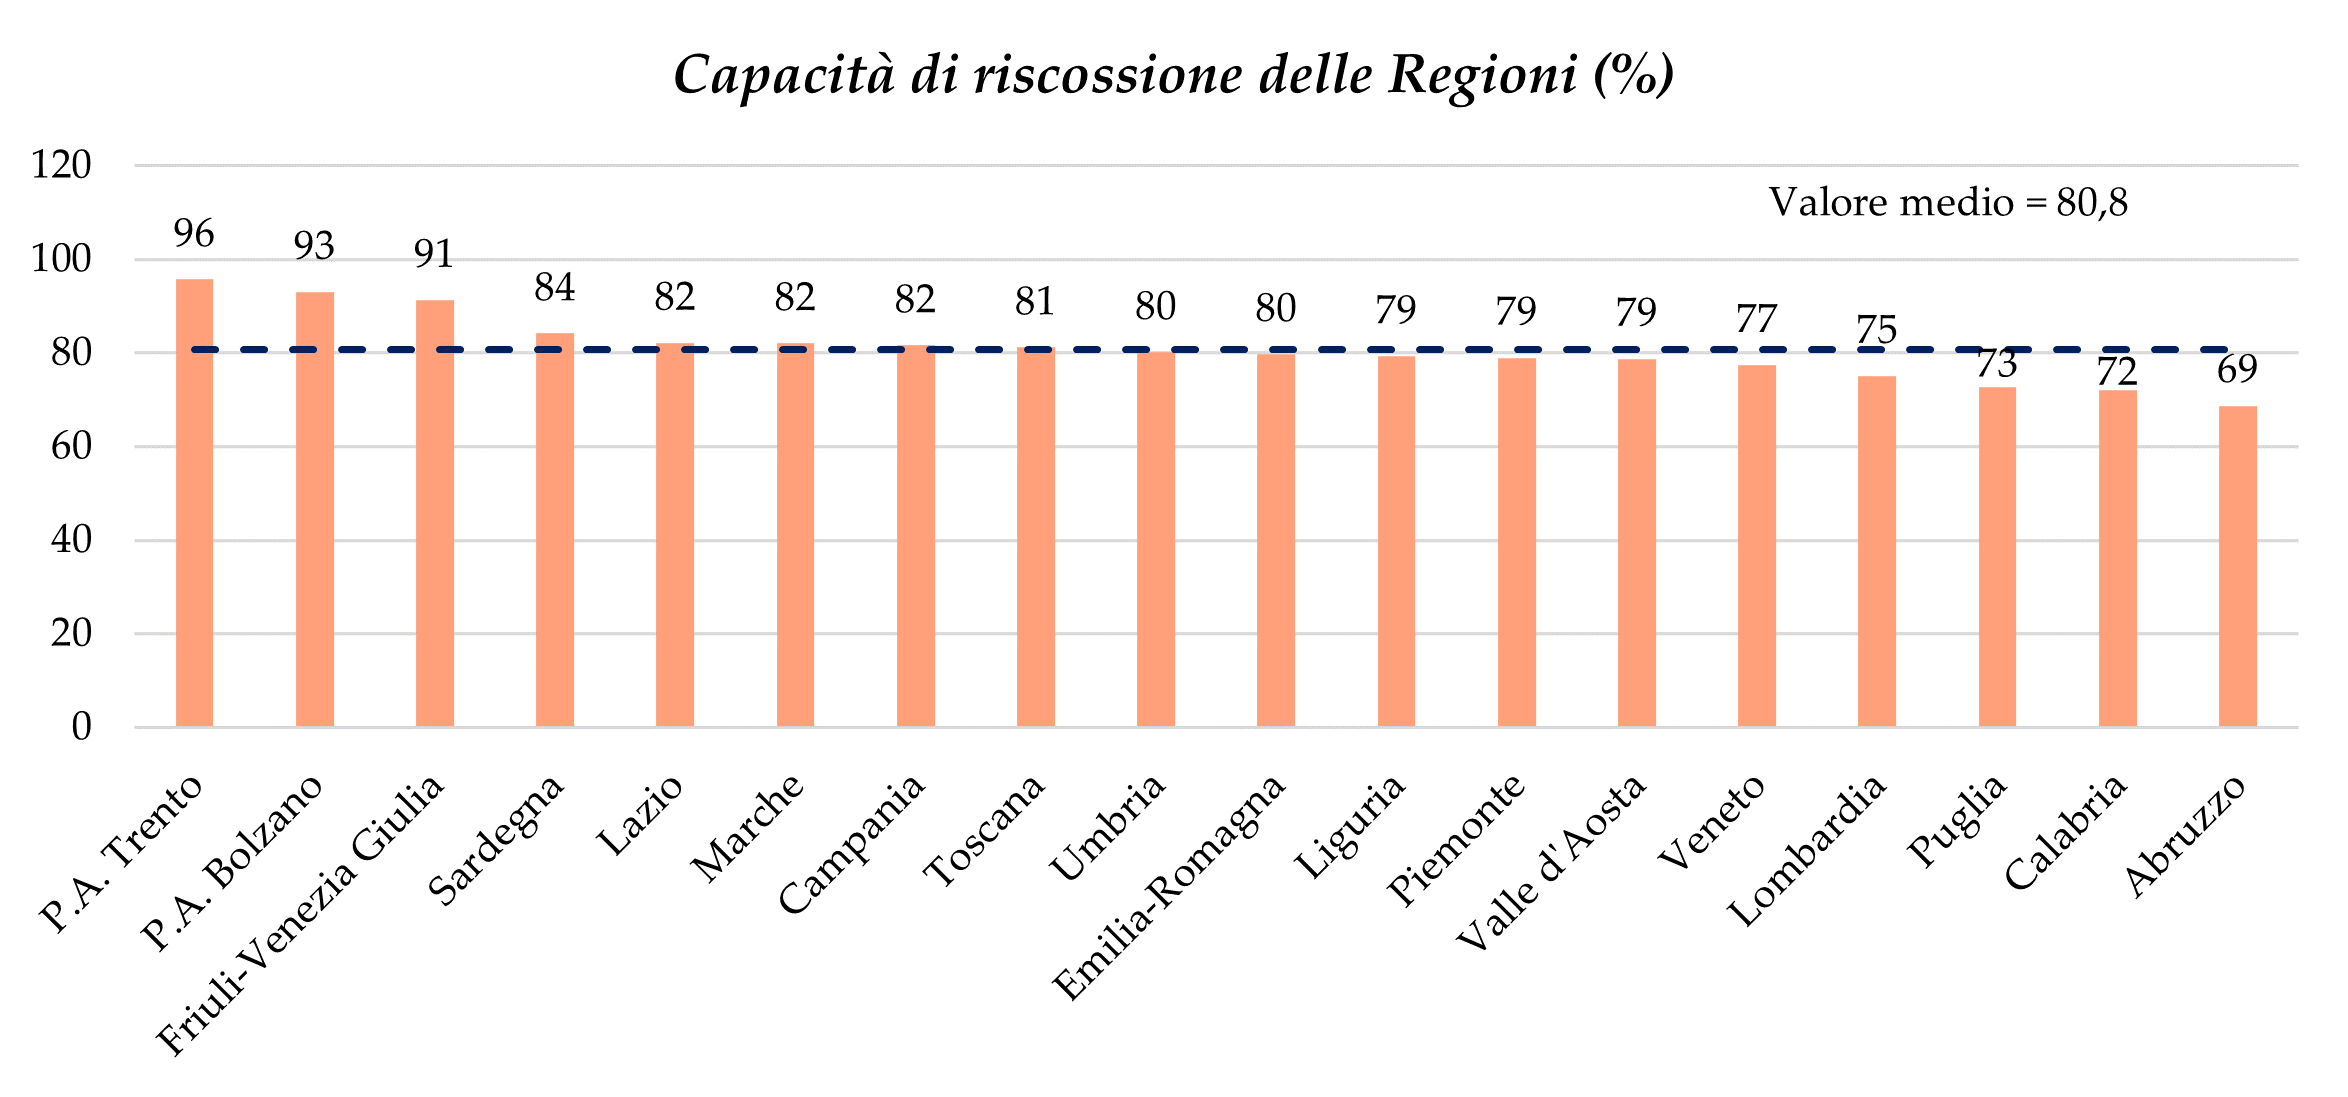 La capacità di riscossione nelle Regioni